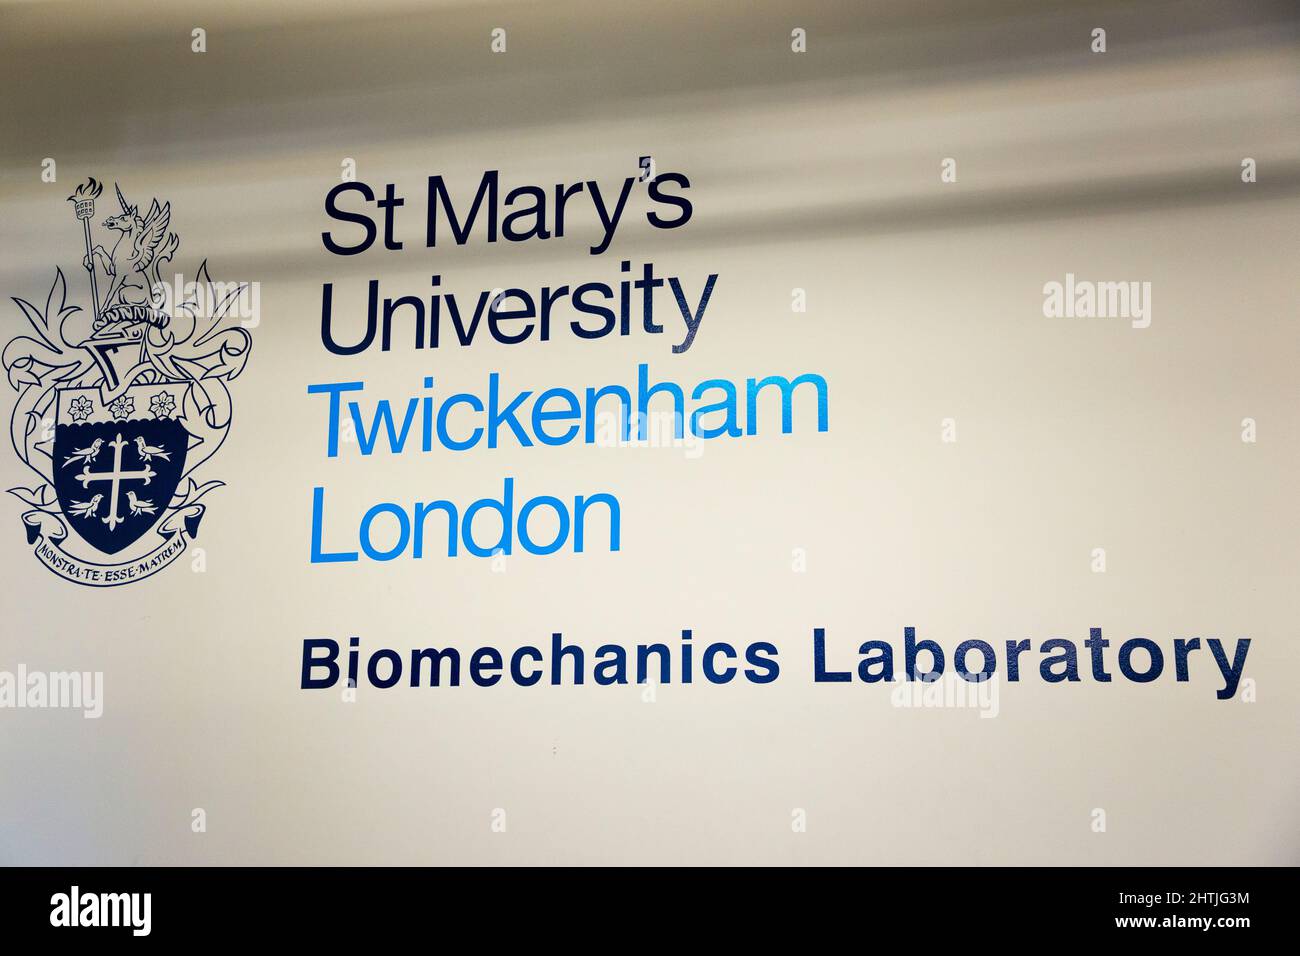 Le logo de l'Université sur un panneau à l'Université St Mary / Saint Marys, laboratoire de biomécanique de Twickenham. ROYAUME-UNI (128) Banque D'Images